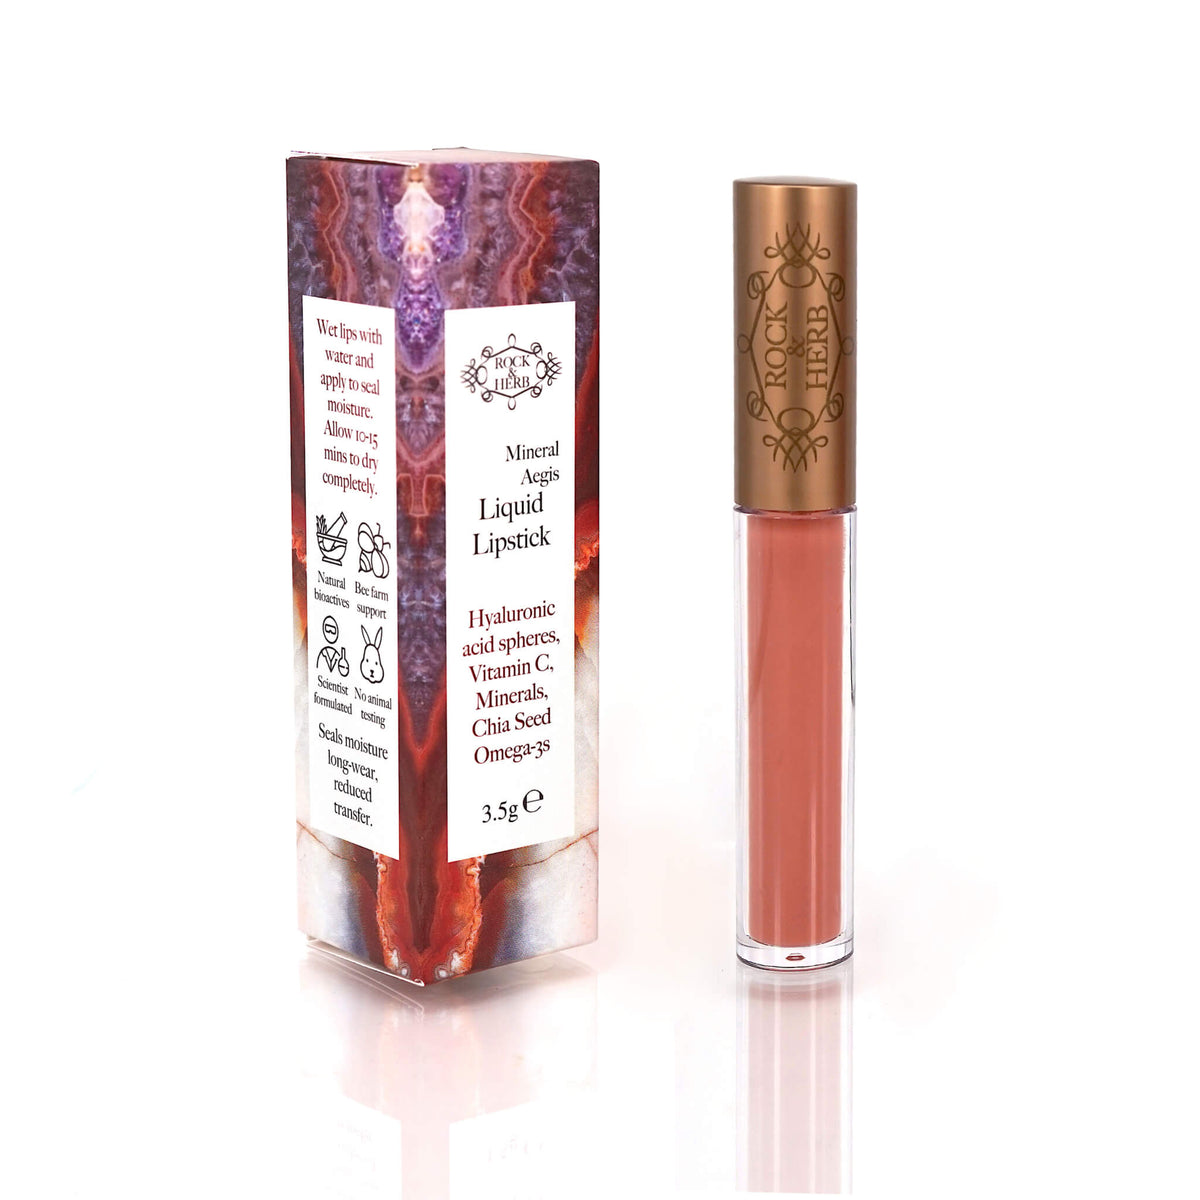 Mineral Aegis Liquid Lipstick